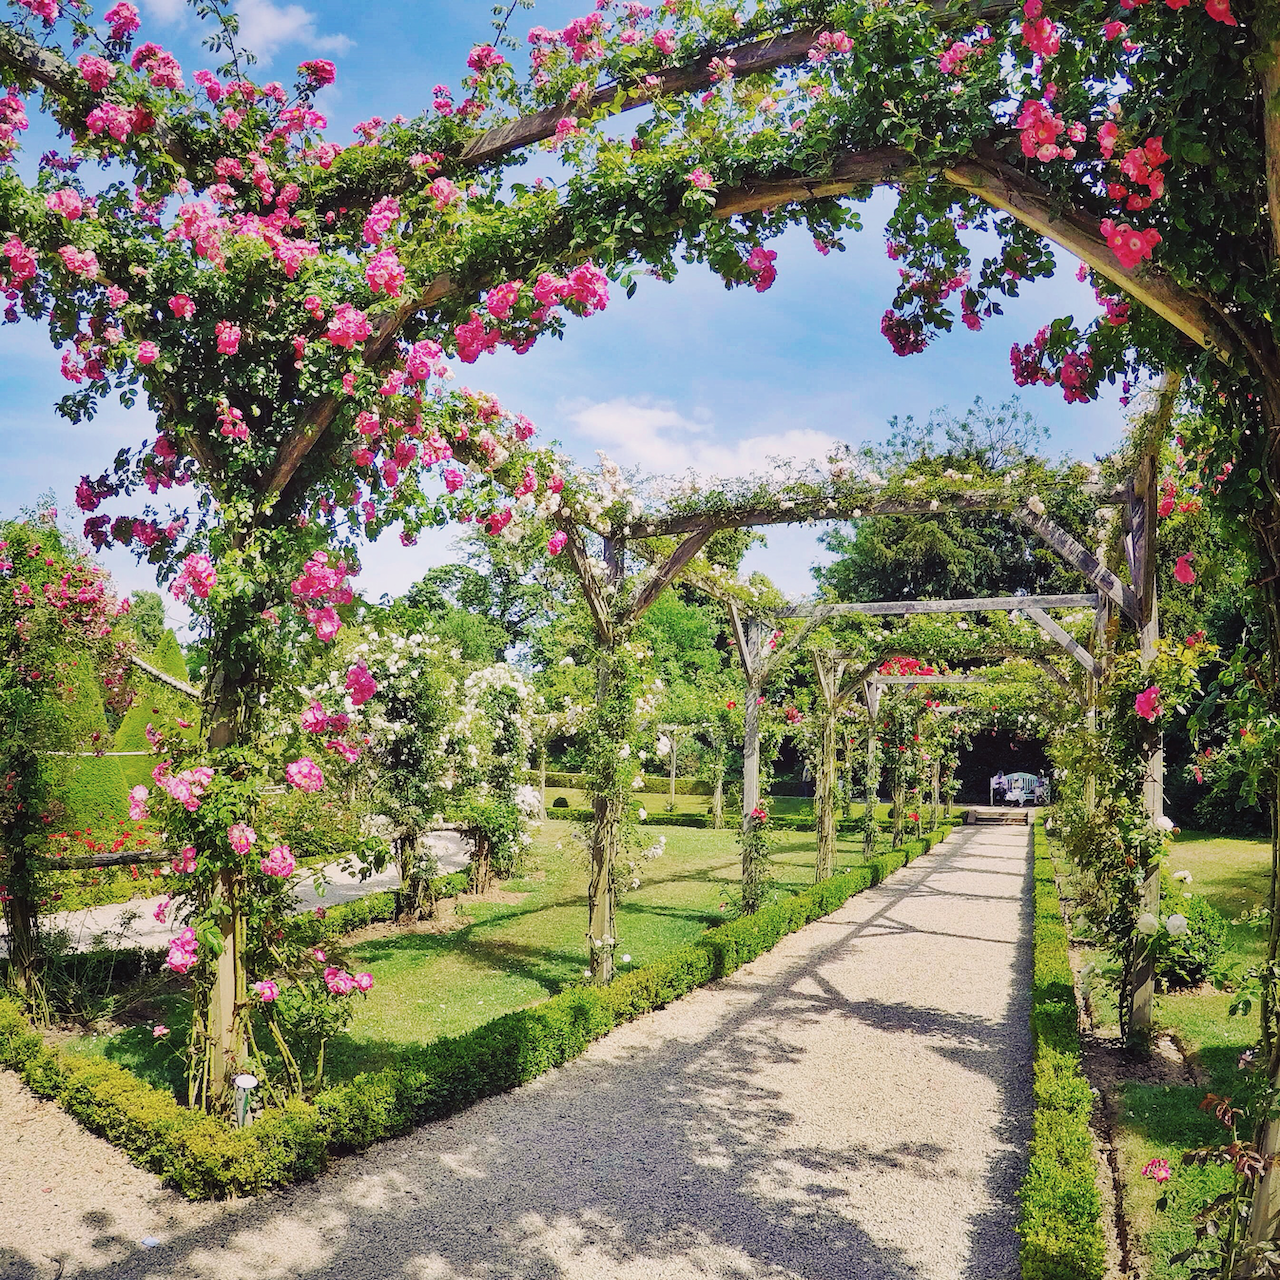 La roseraie des jardins de Bagatelle - Bois de Boulogne - Paris - France